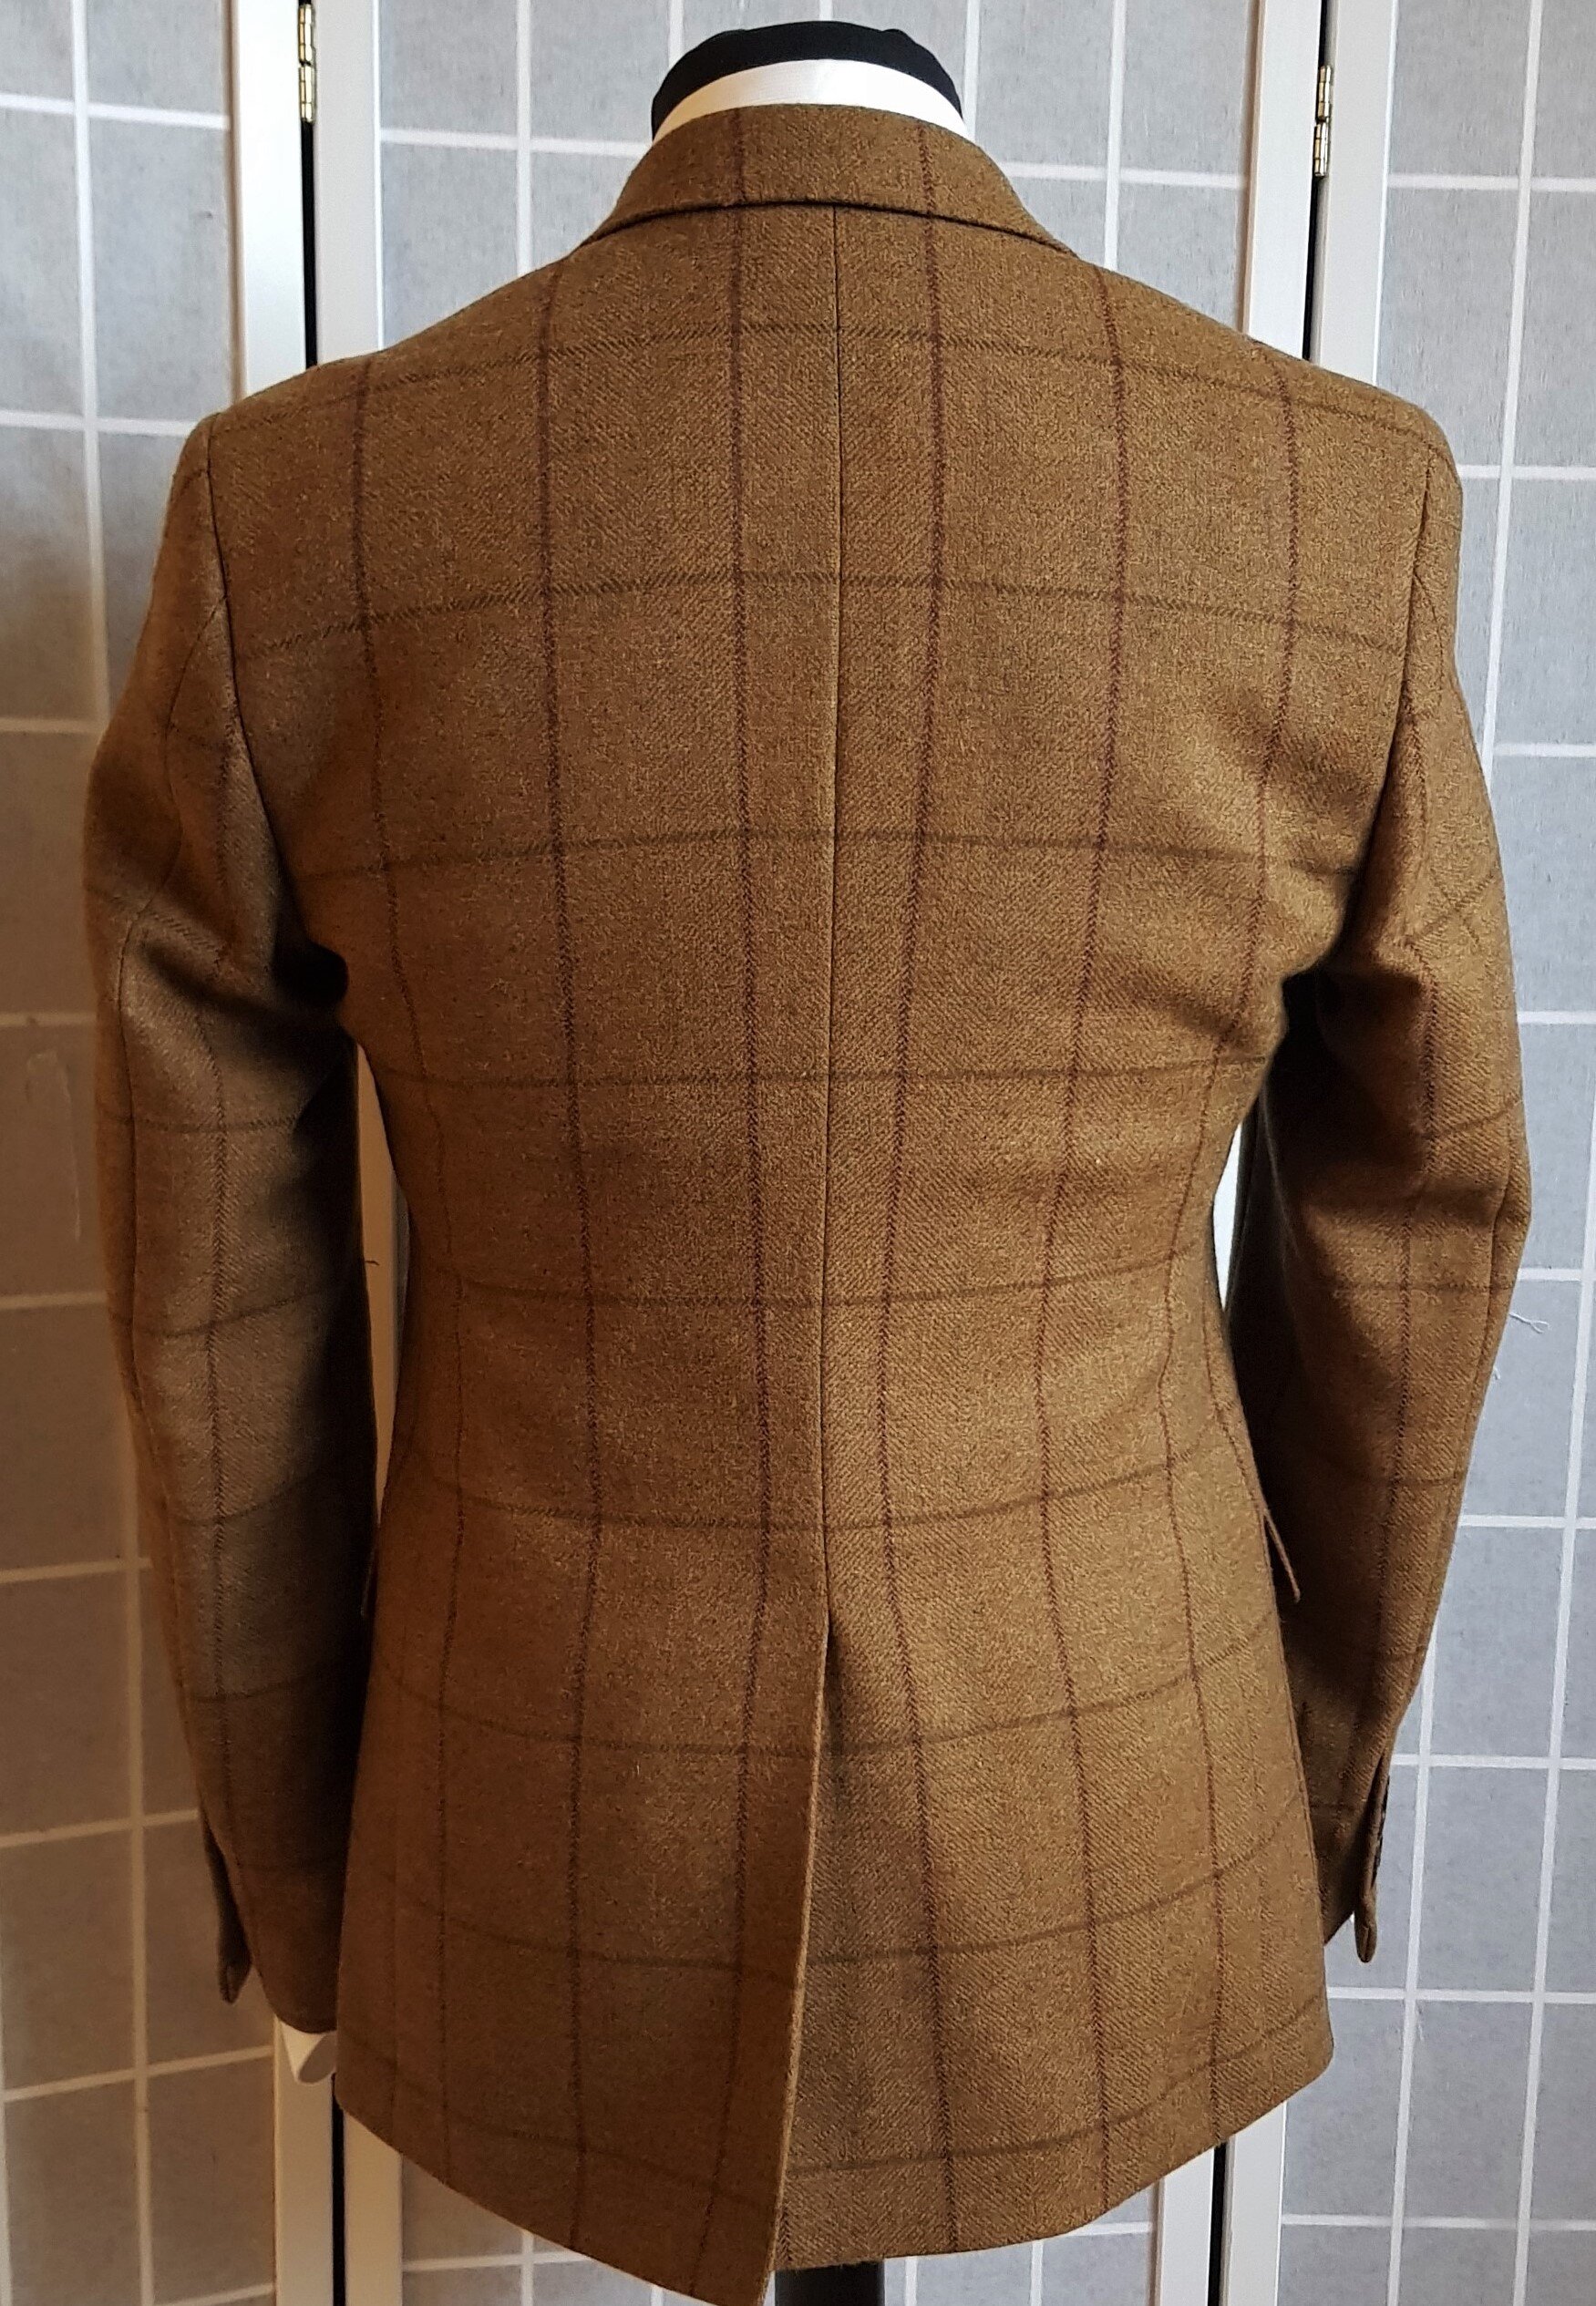 3 Piece Suit in Glenroyal Tweed (7).jpg